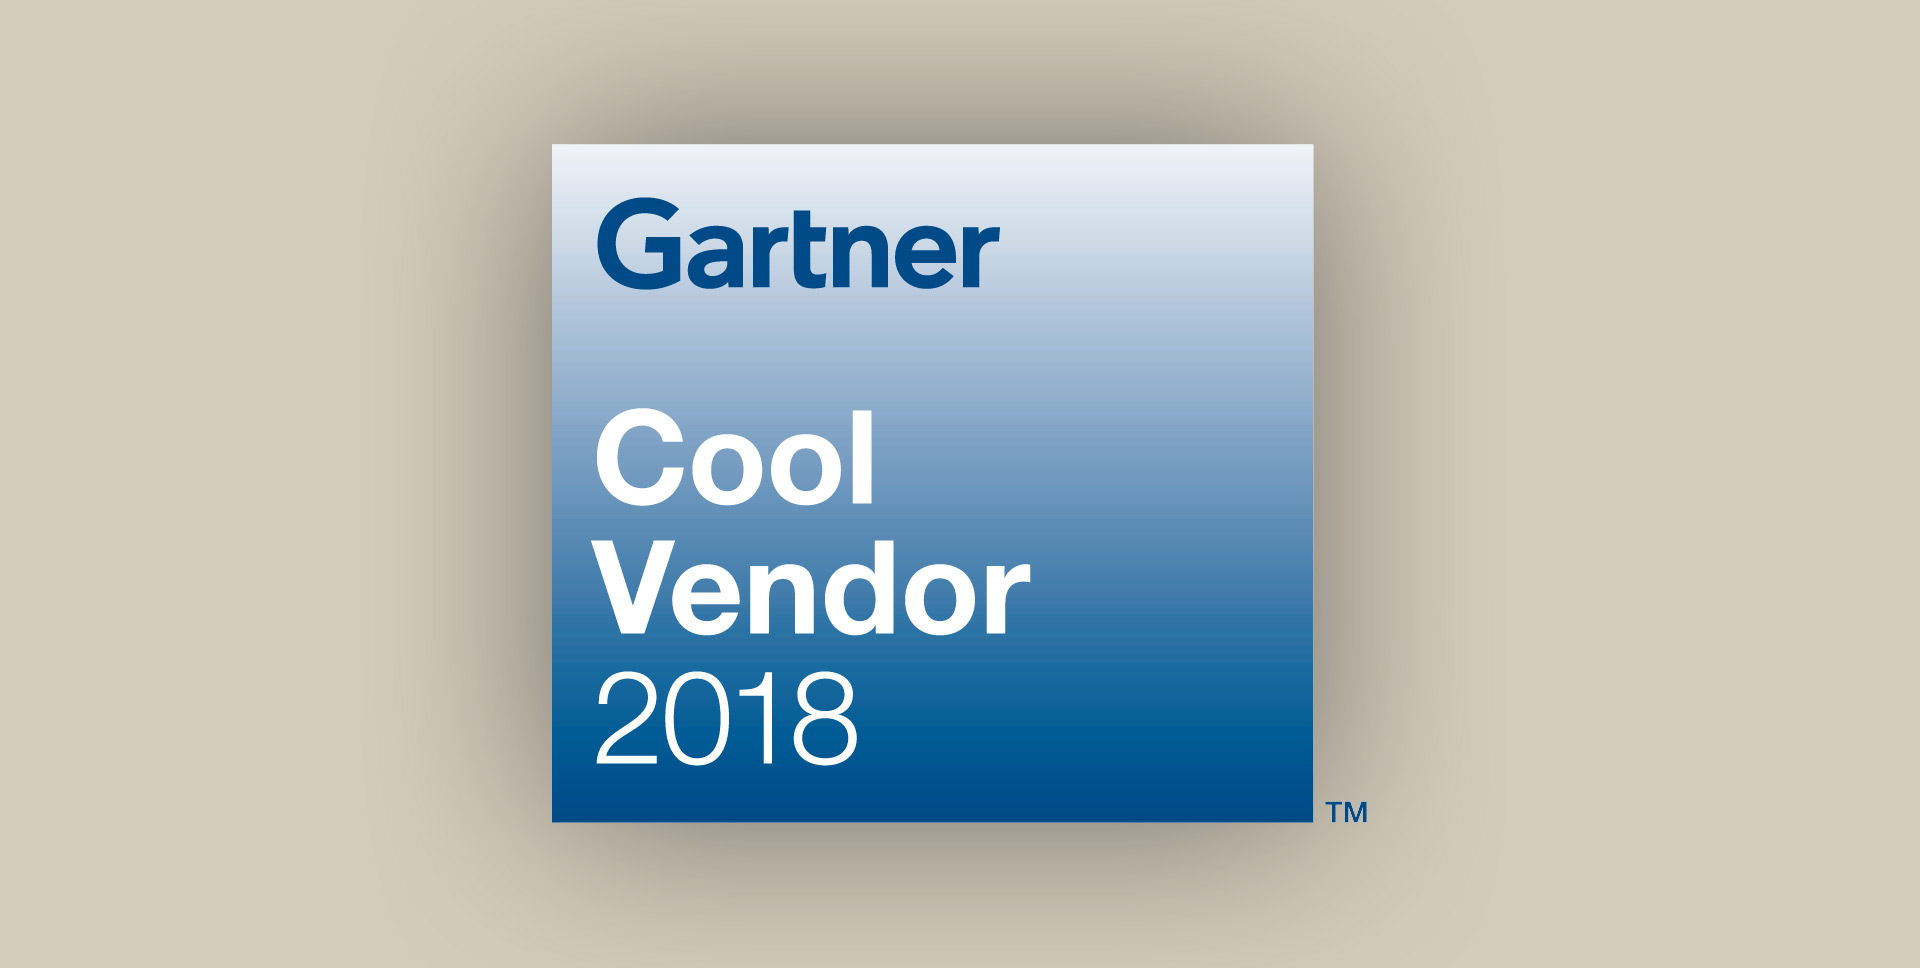 Gartner Cool Vendor 2018 logo